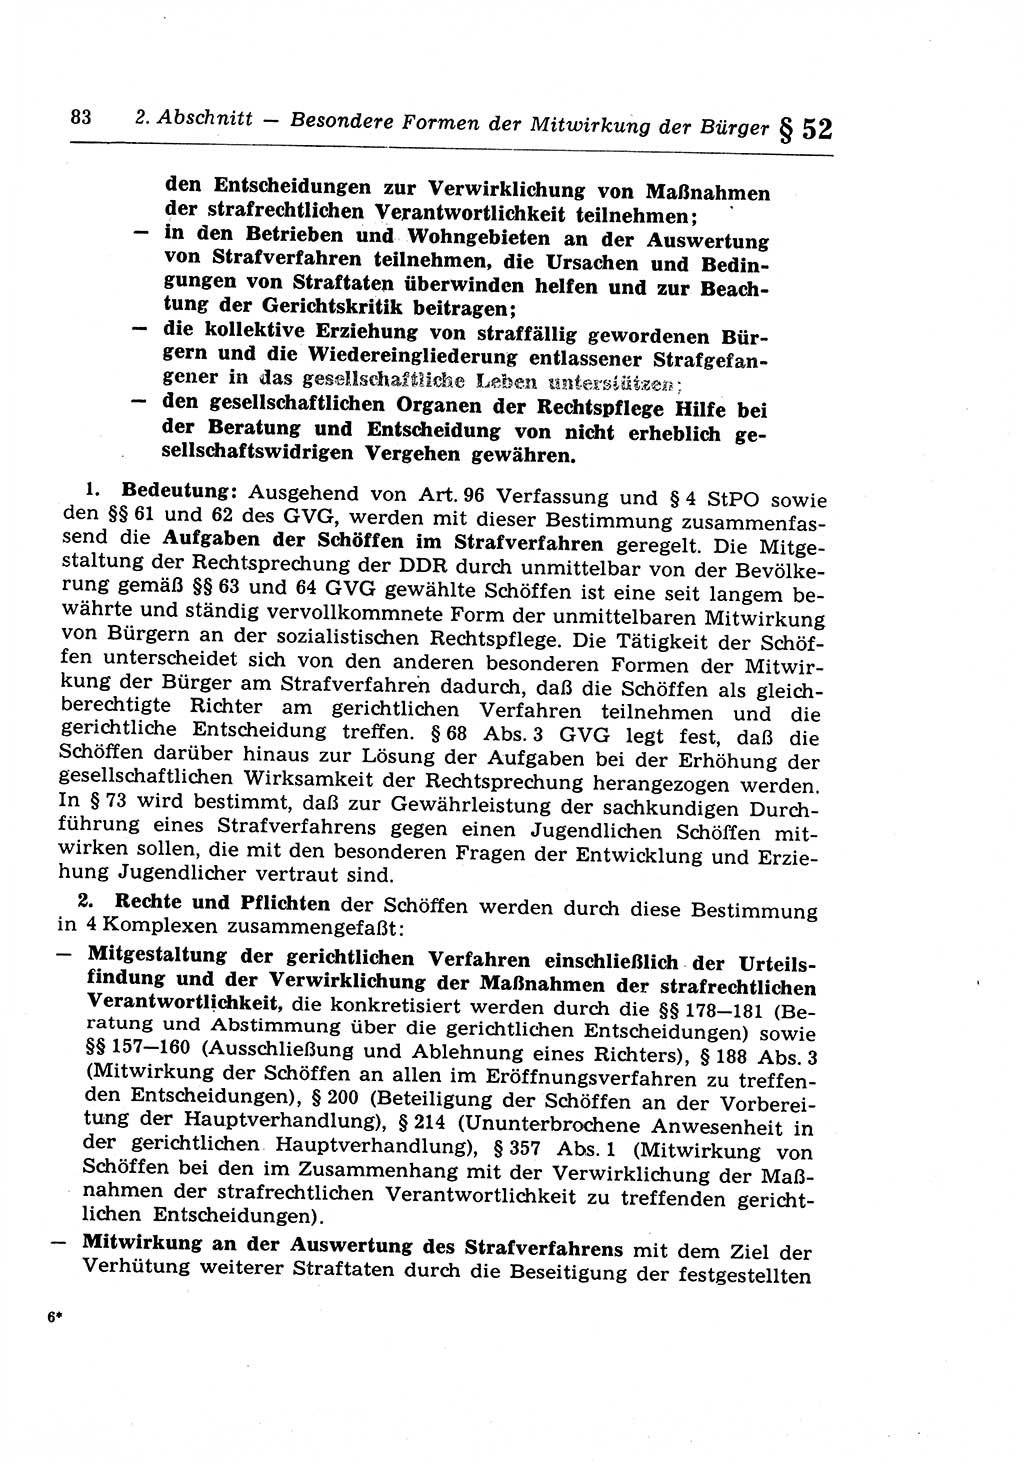 Strafprozeßrecht der DDR (Deutsche Demokratische Republik), Lehrkommentar zur Strafprozeßordnung (StPO) 1968, Seite 83 (Strafprozeßr. DDR Lehrkomm. StPO 19688, S. 83)